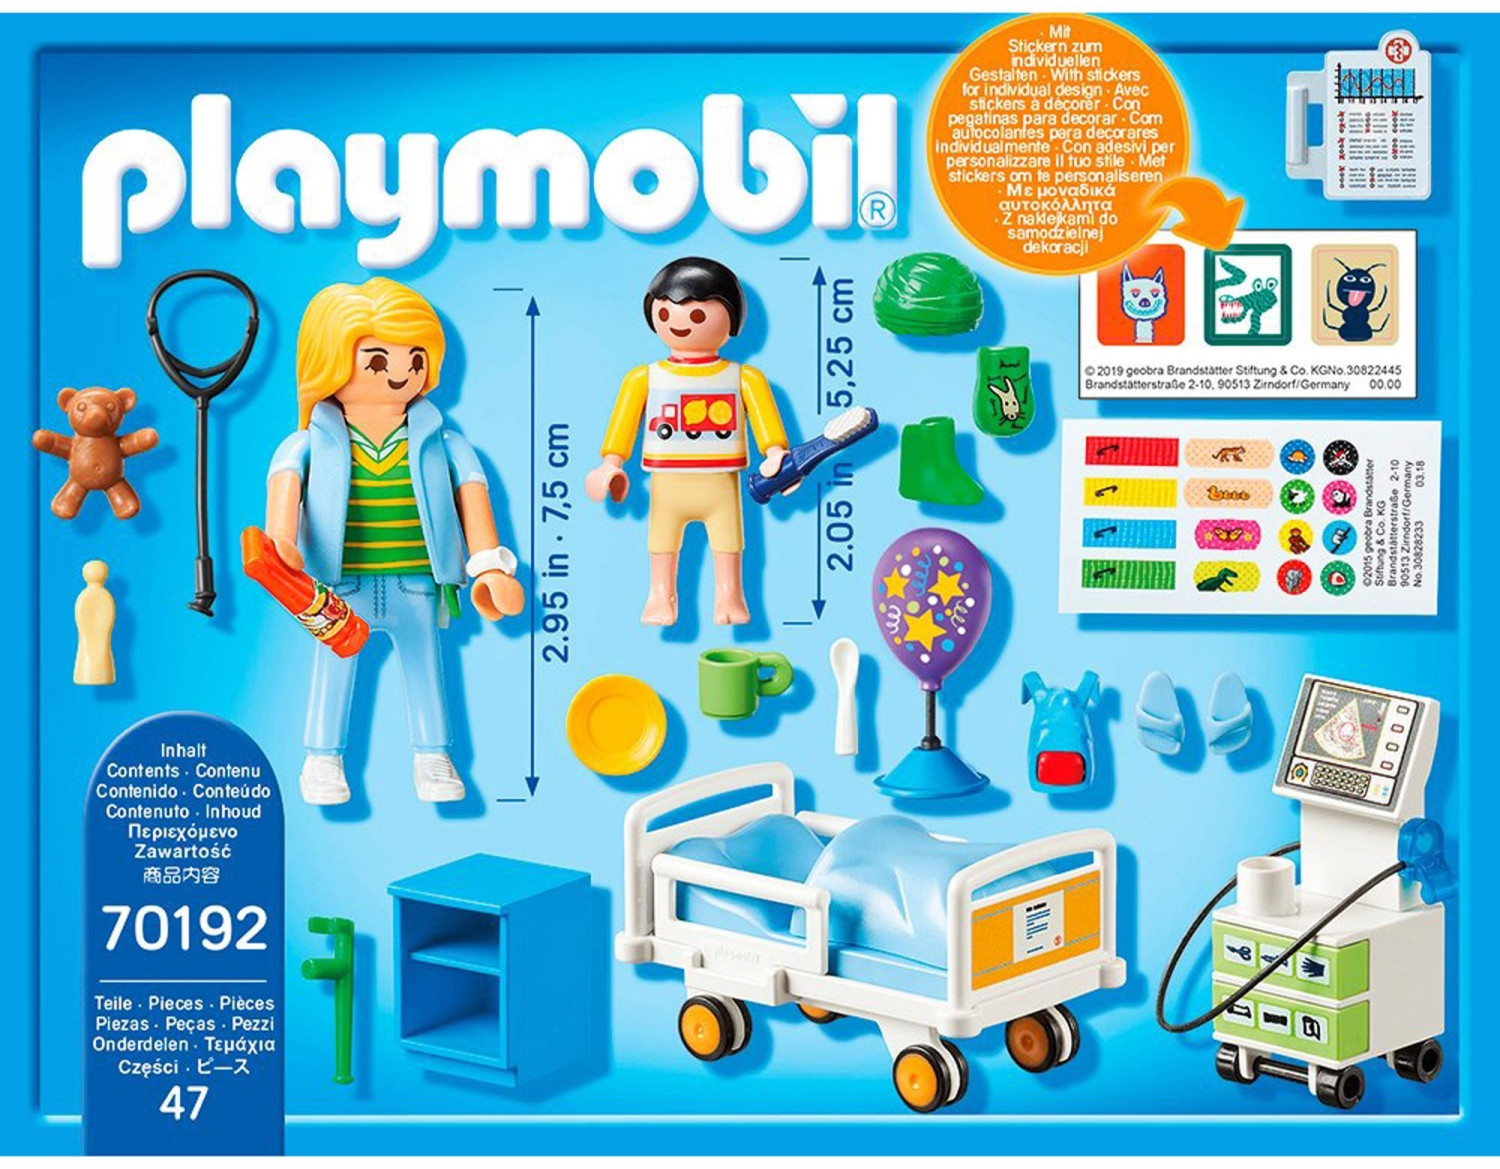 Playmobil City Life 6661 pas cher, Chambre d'enfant avec médecin